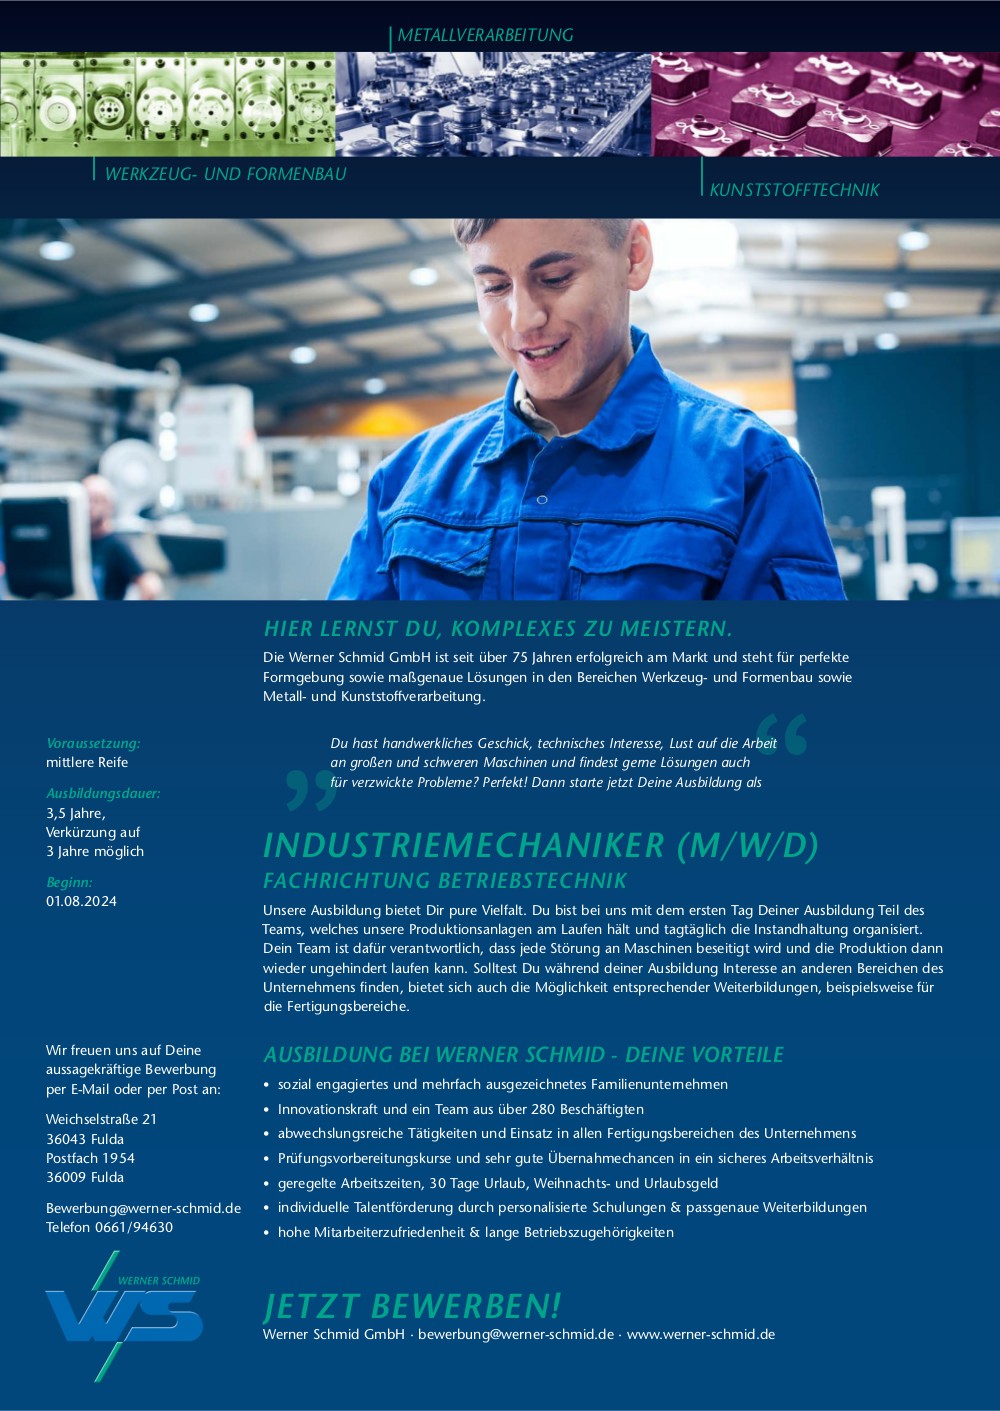 Ausbildung zum Industriemechaniker (m/w/d) in der Fachrichtung Betriebstechnik